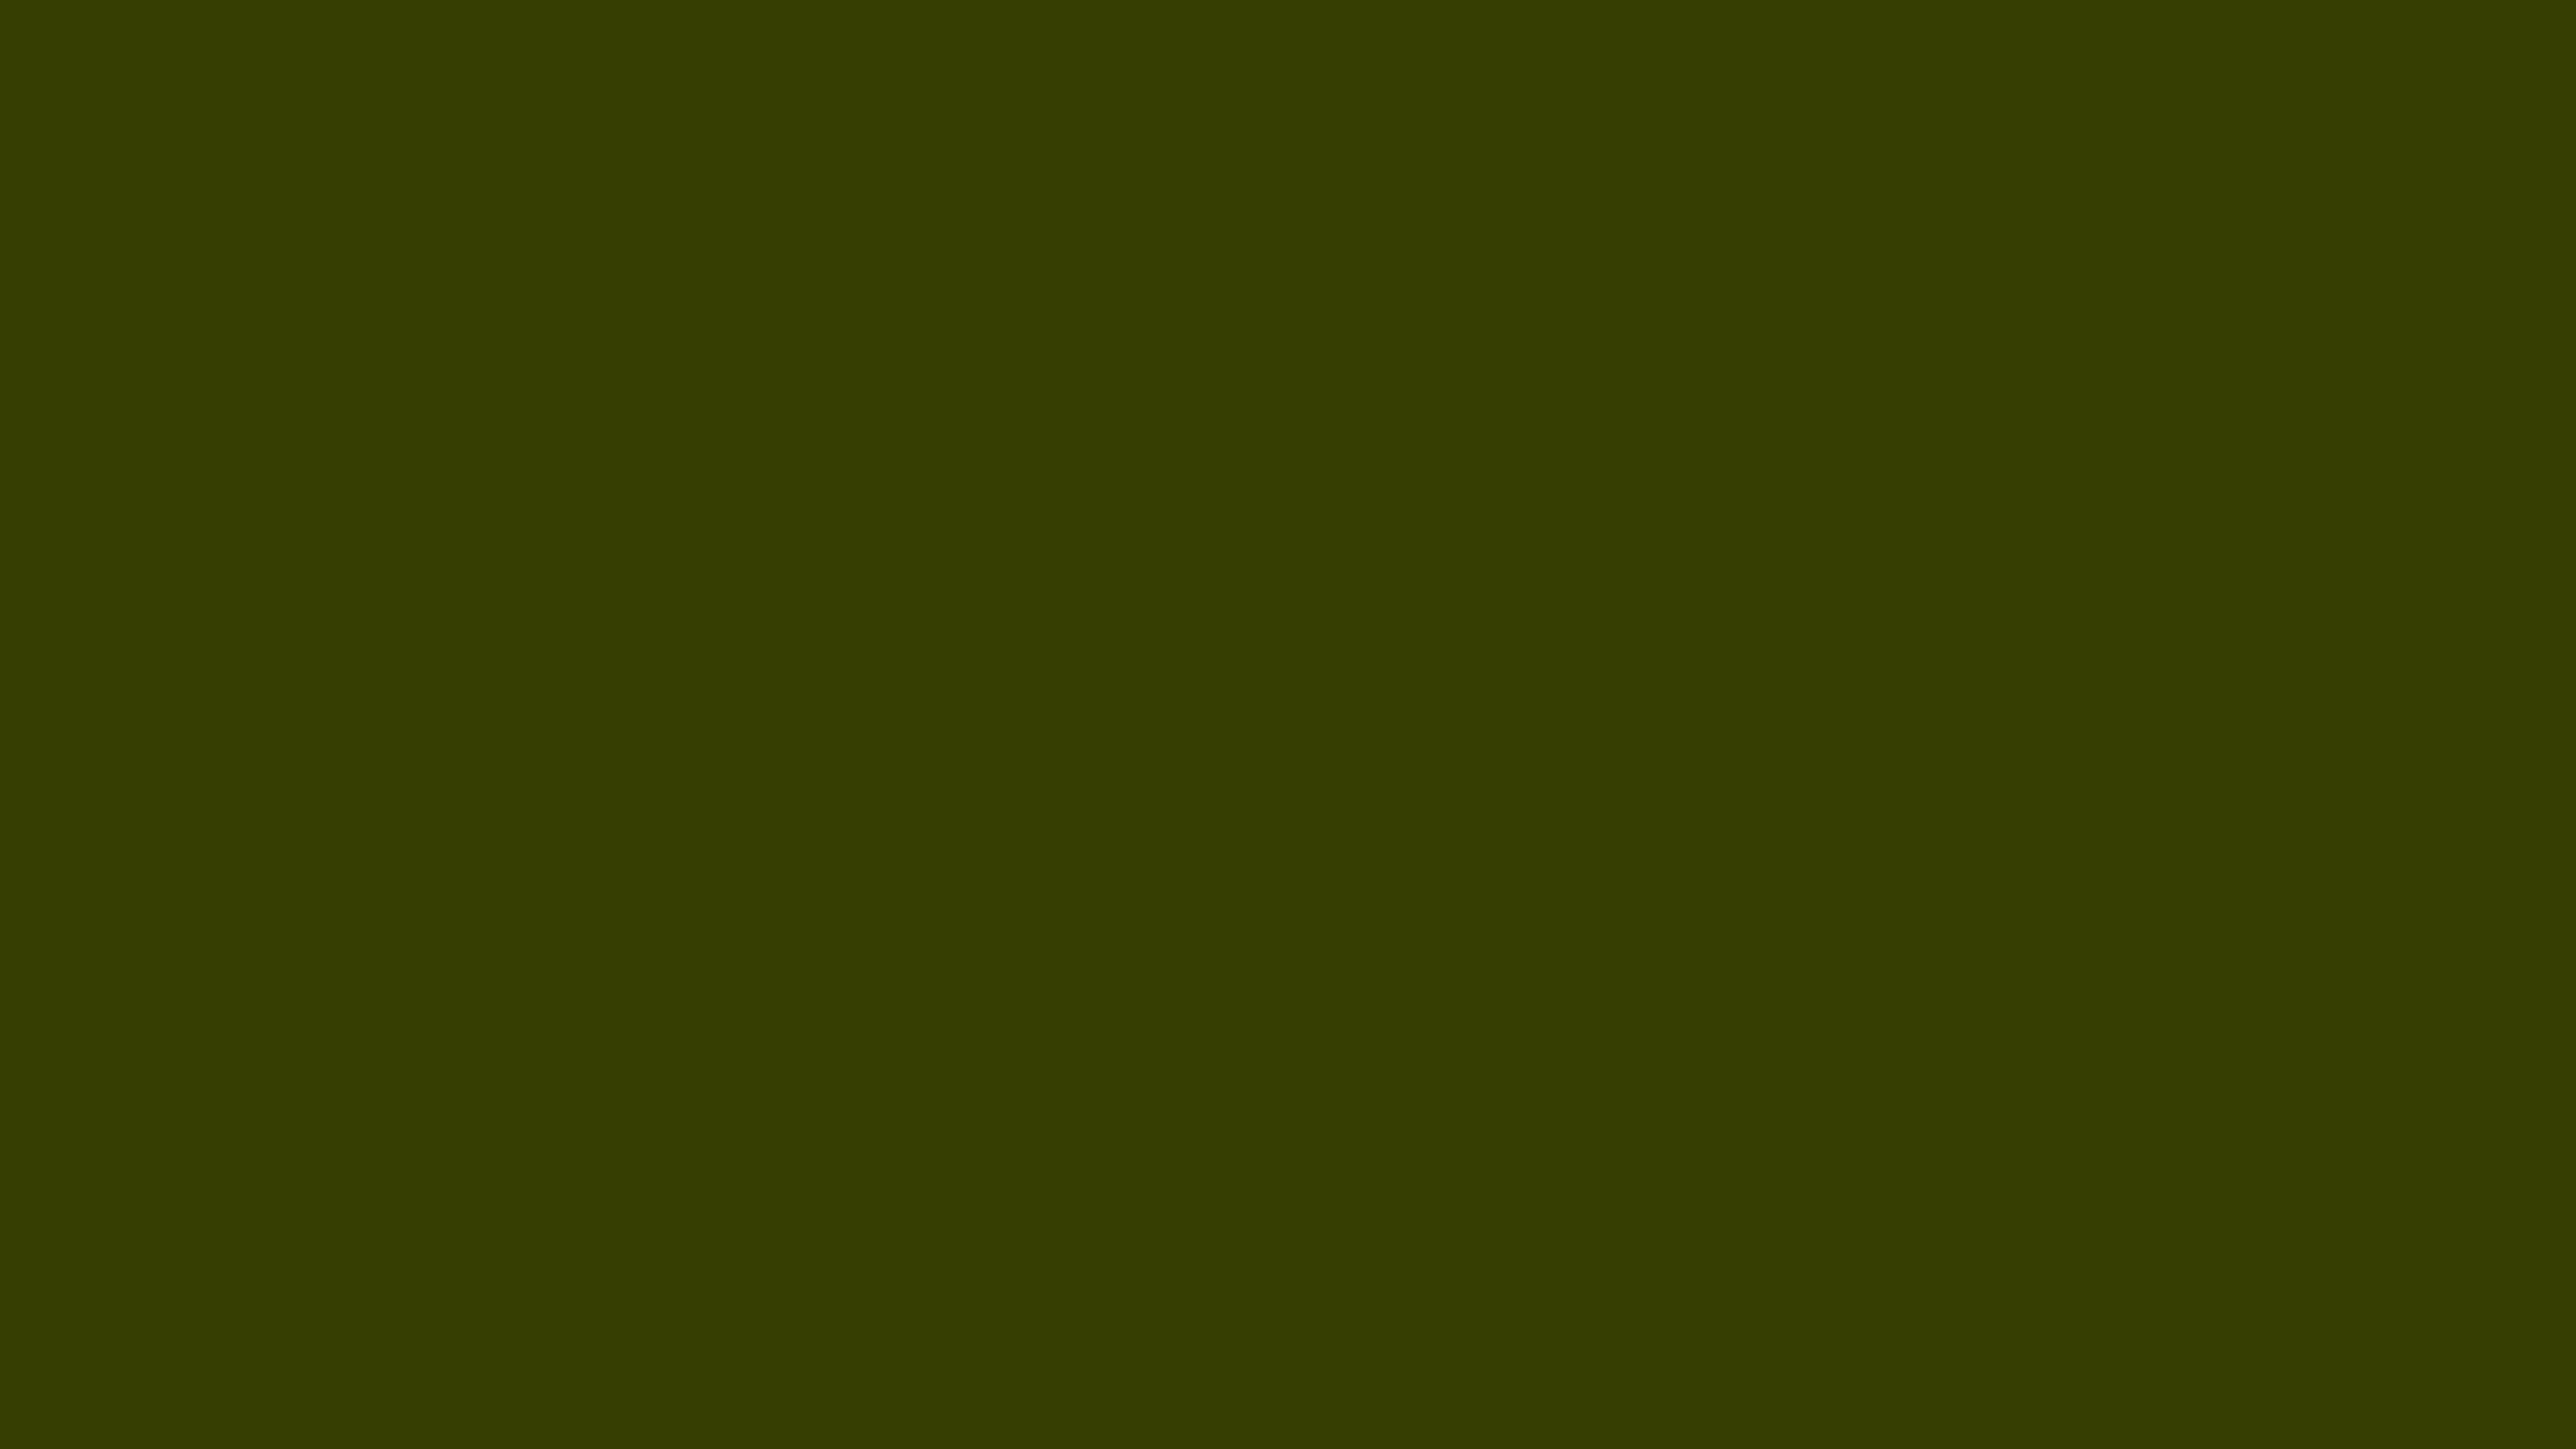 Dark Olive Solid Color Background Image